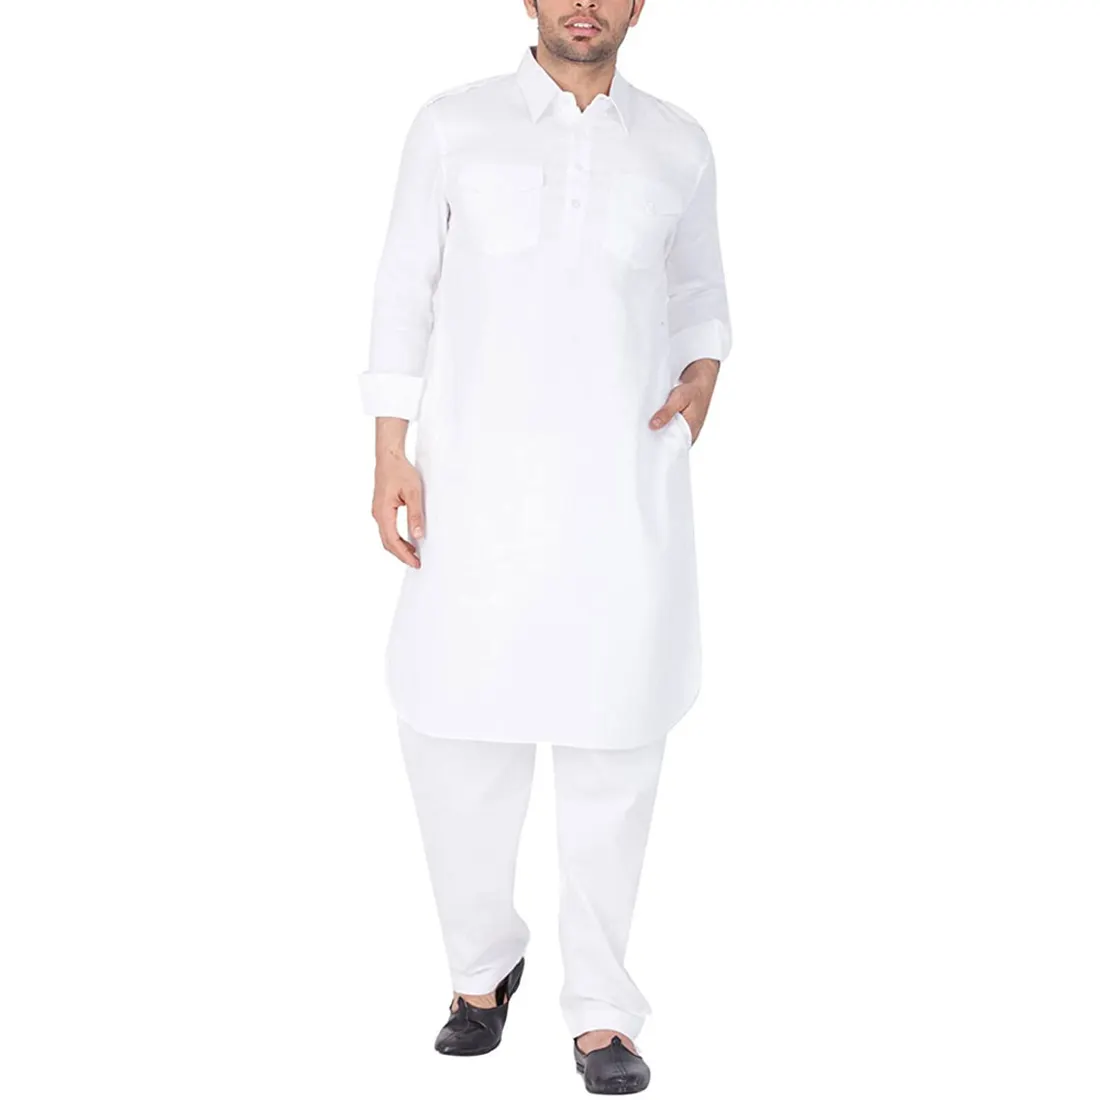 Neues stilvolles Herren kleid Shalwar Kameez Neueste Designs in Freizeit kleidung Herren Shalwar Kameez Set